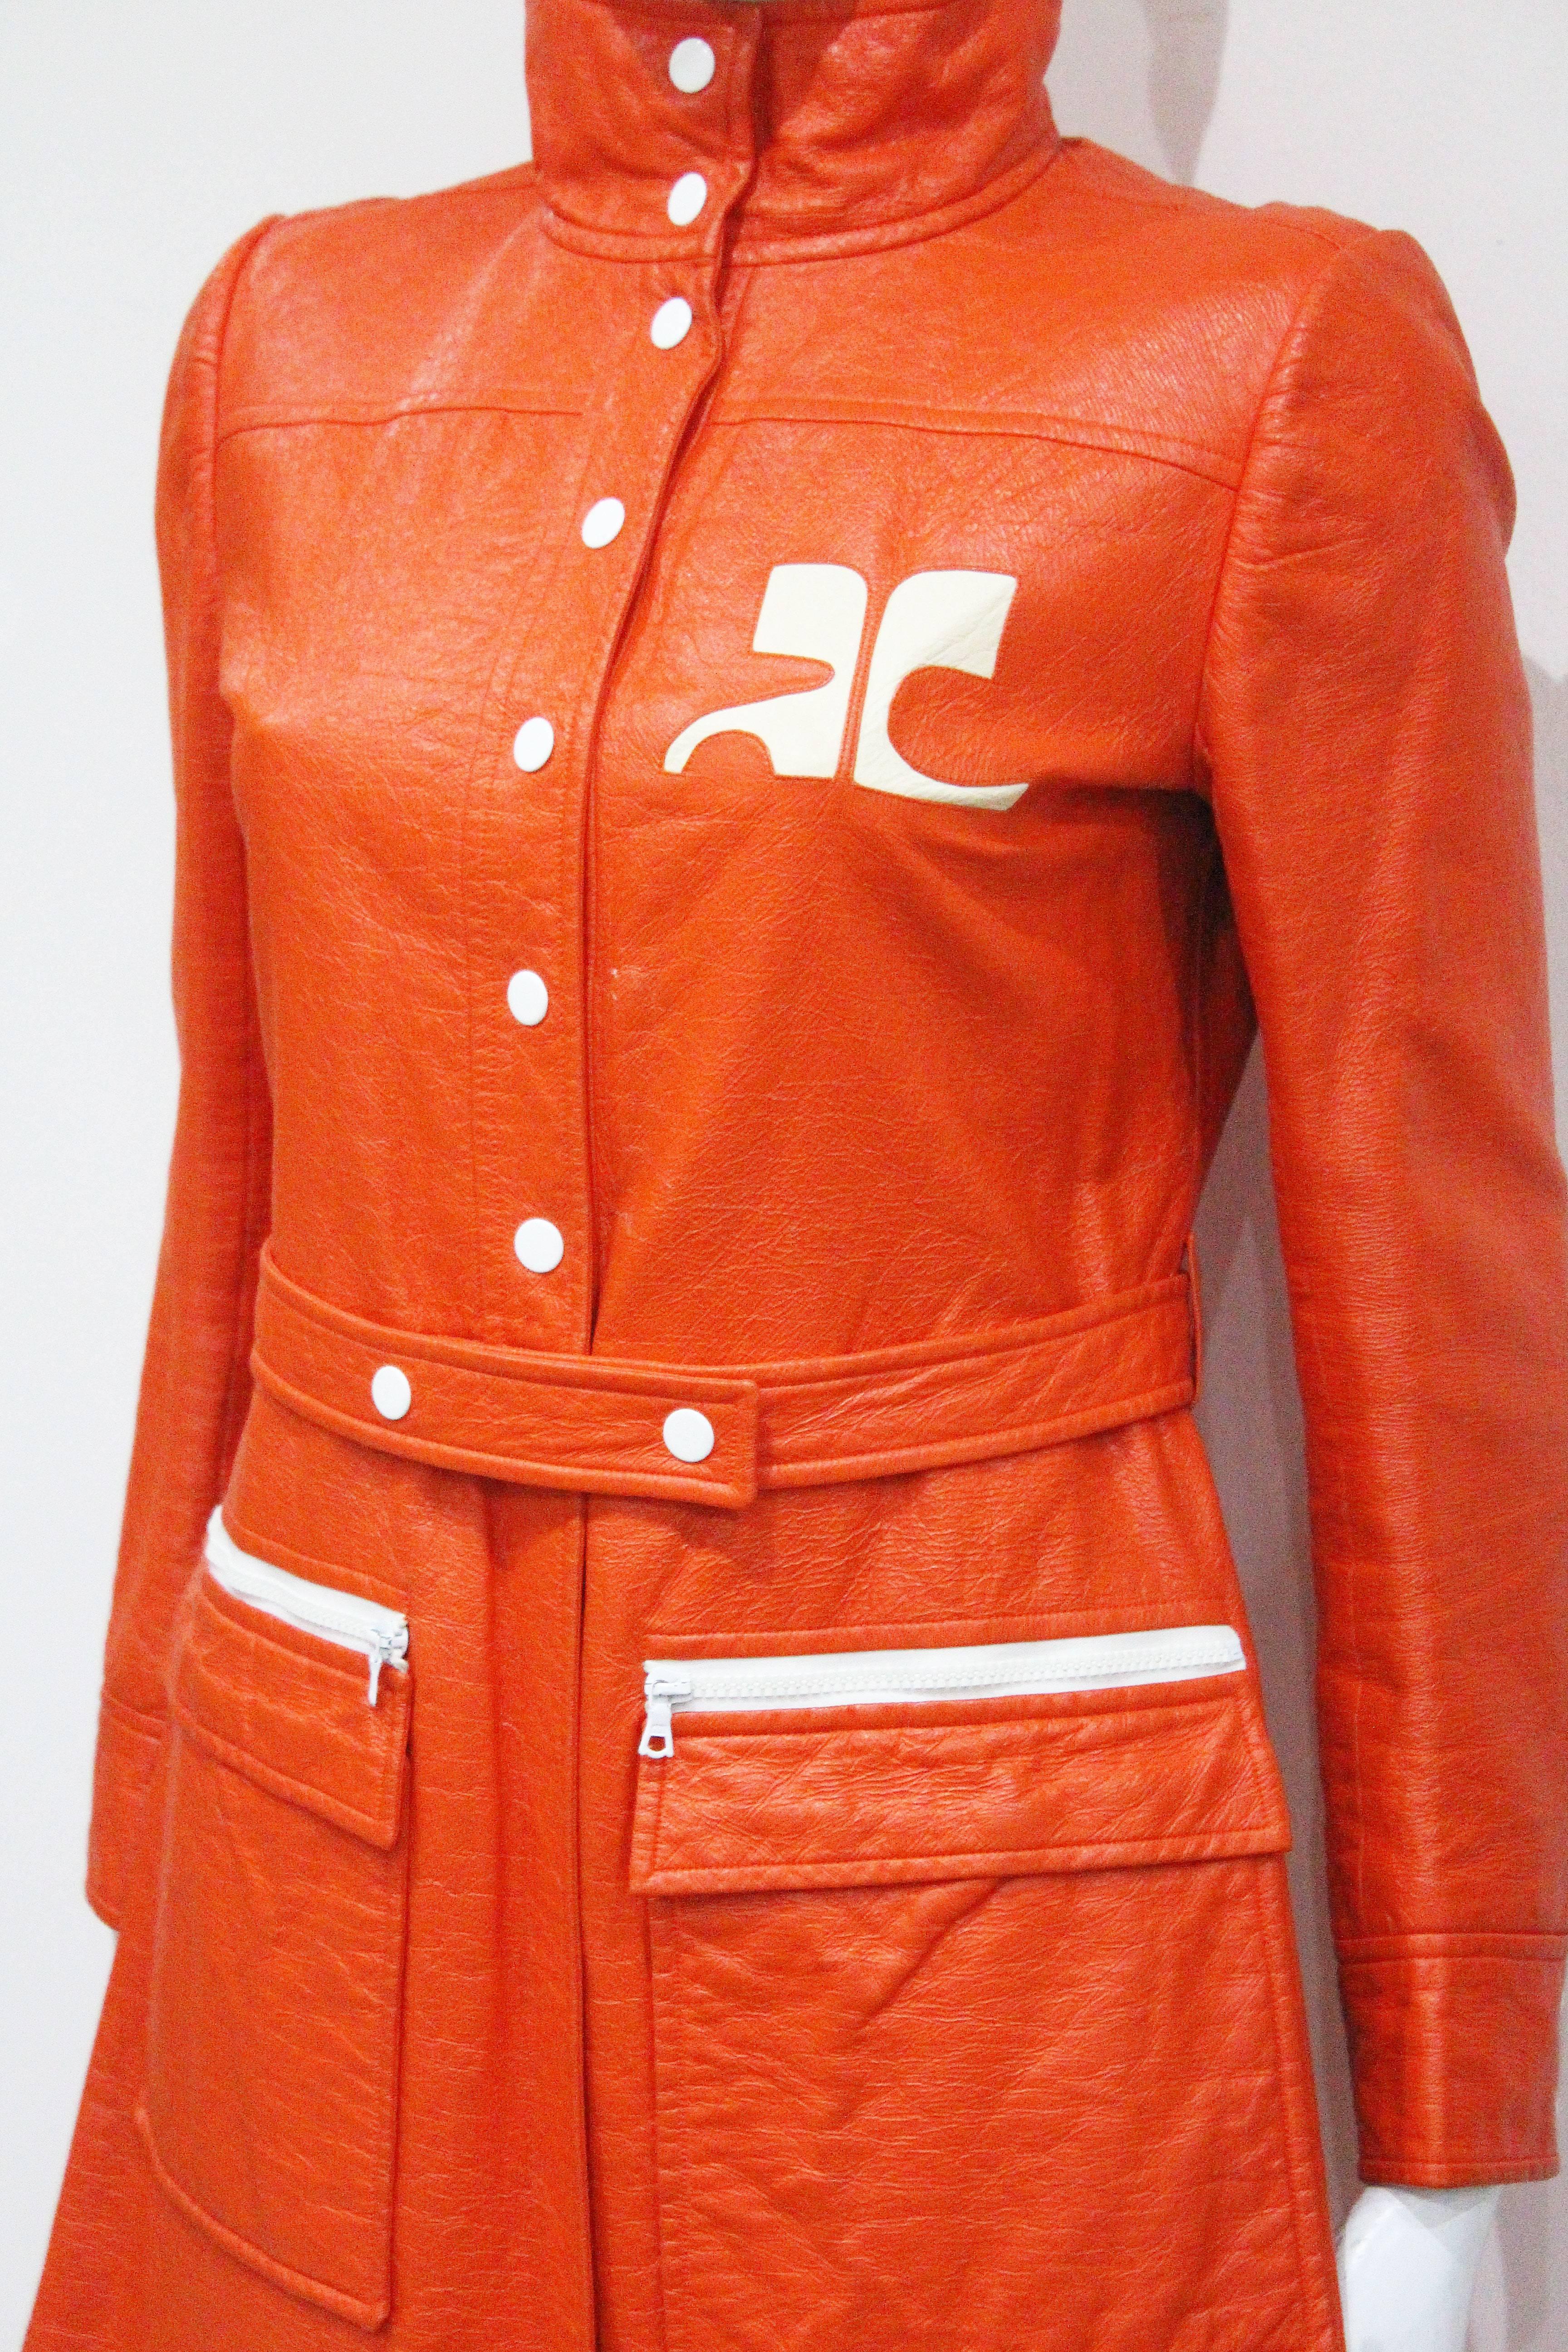 Red Courreges orange vinyl coat dress, c. 1970